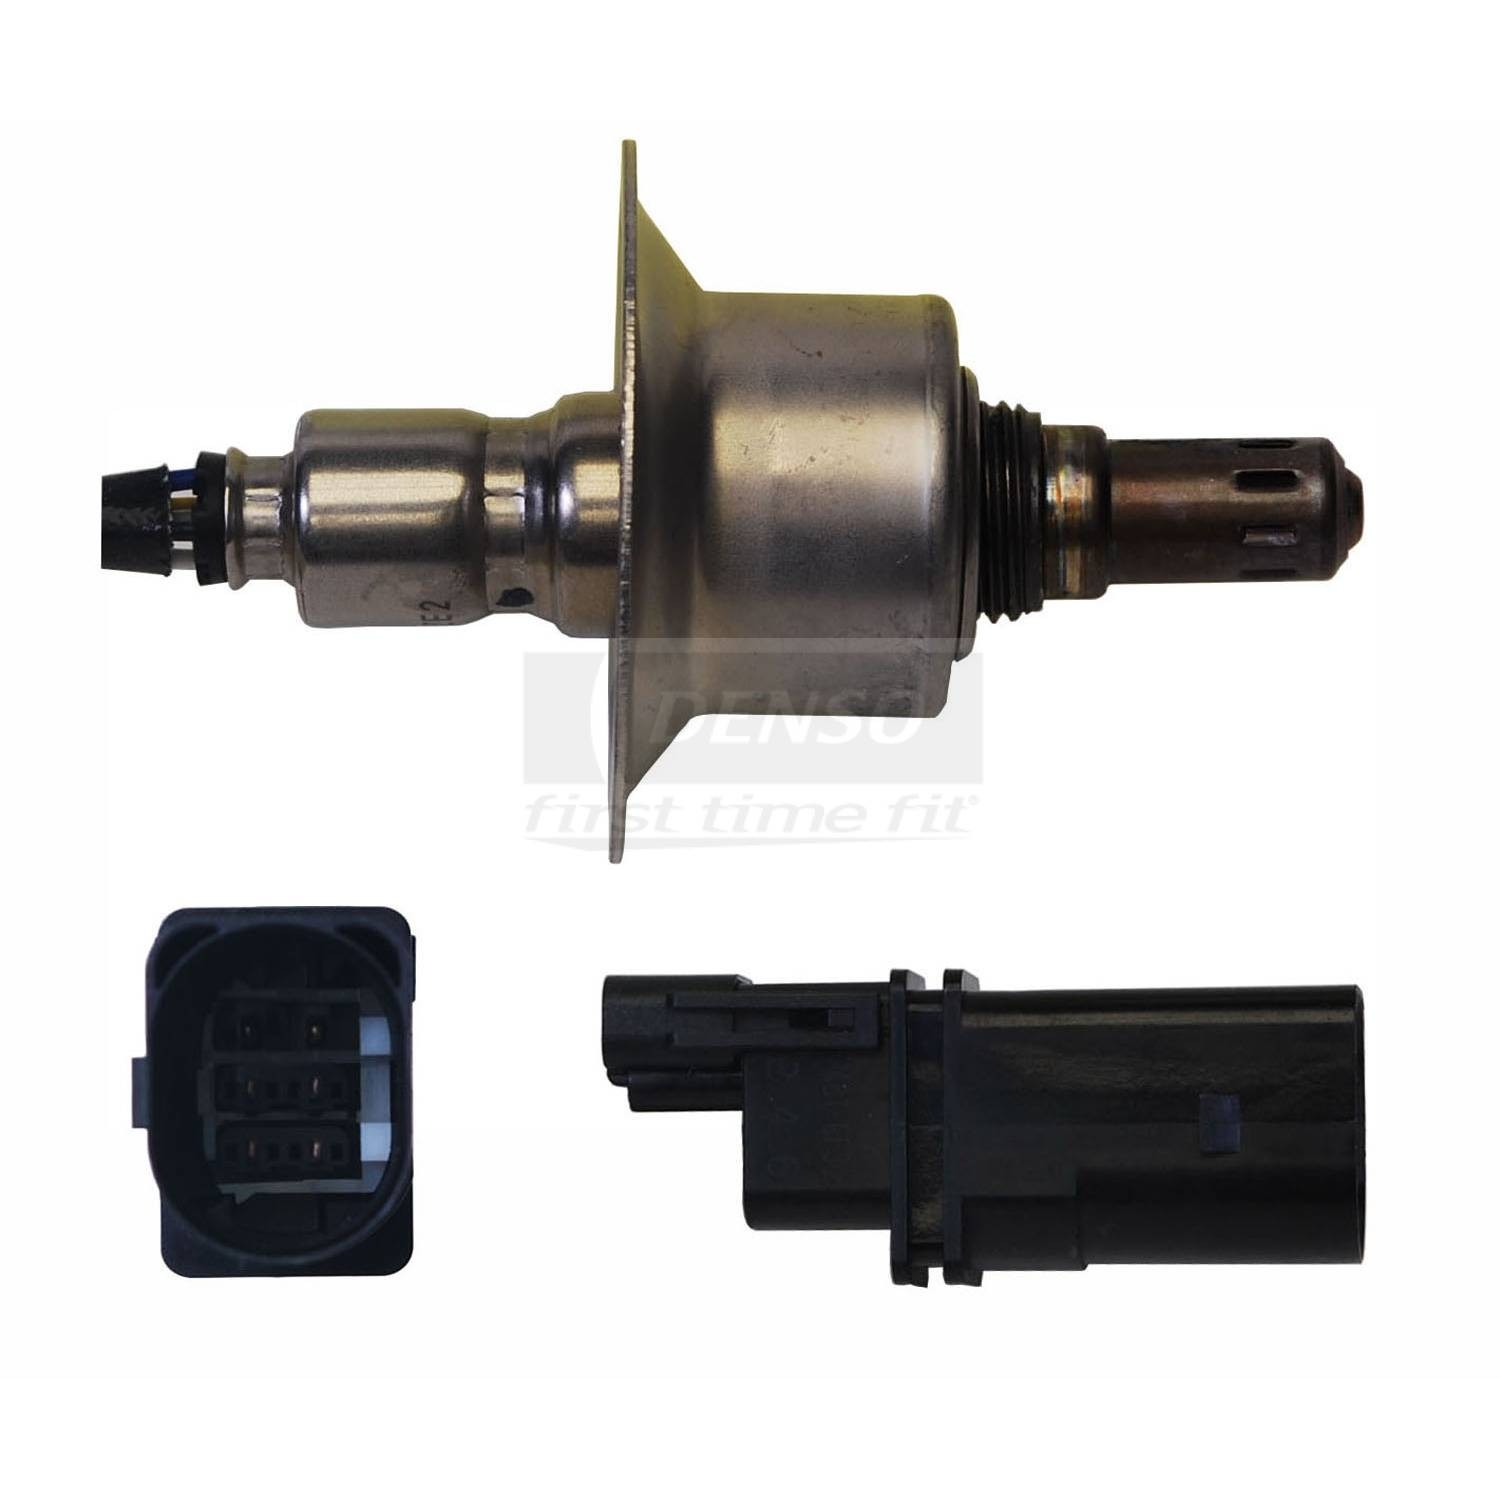 Foto de Sensor de Relacin aire / combustible OE Style para Kia Hyundai Marca DENSO Nmero de Parte #234-5029